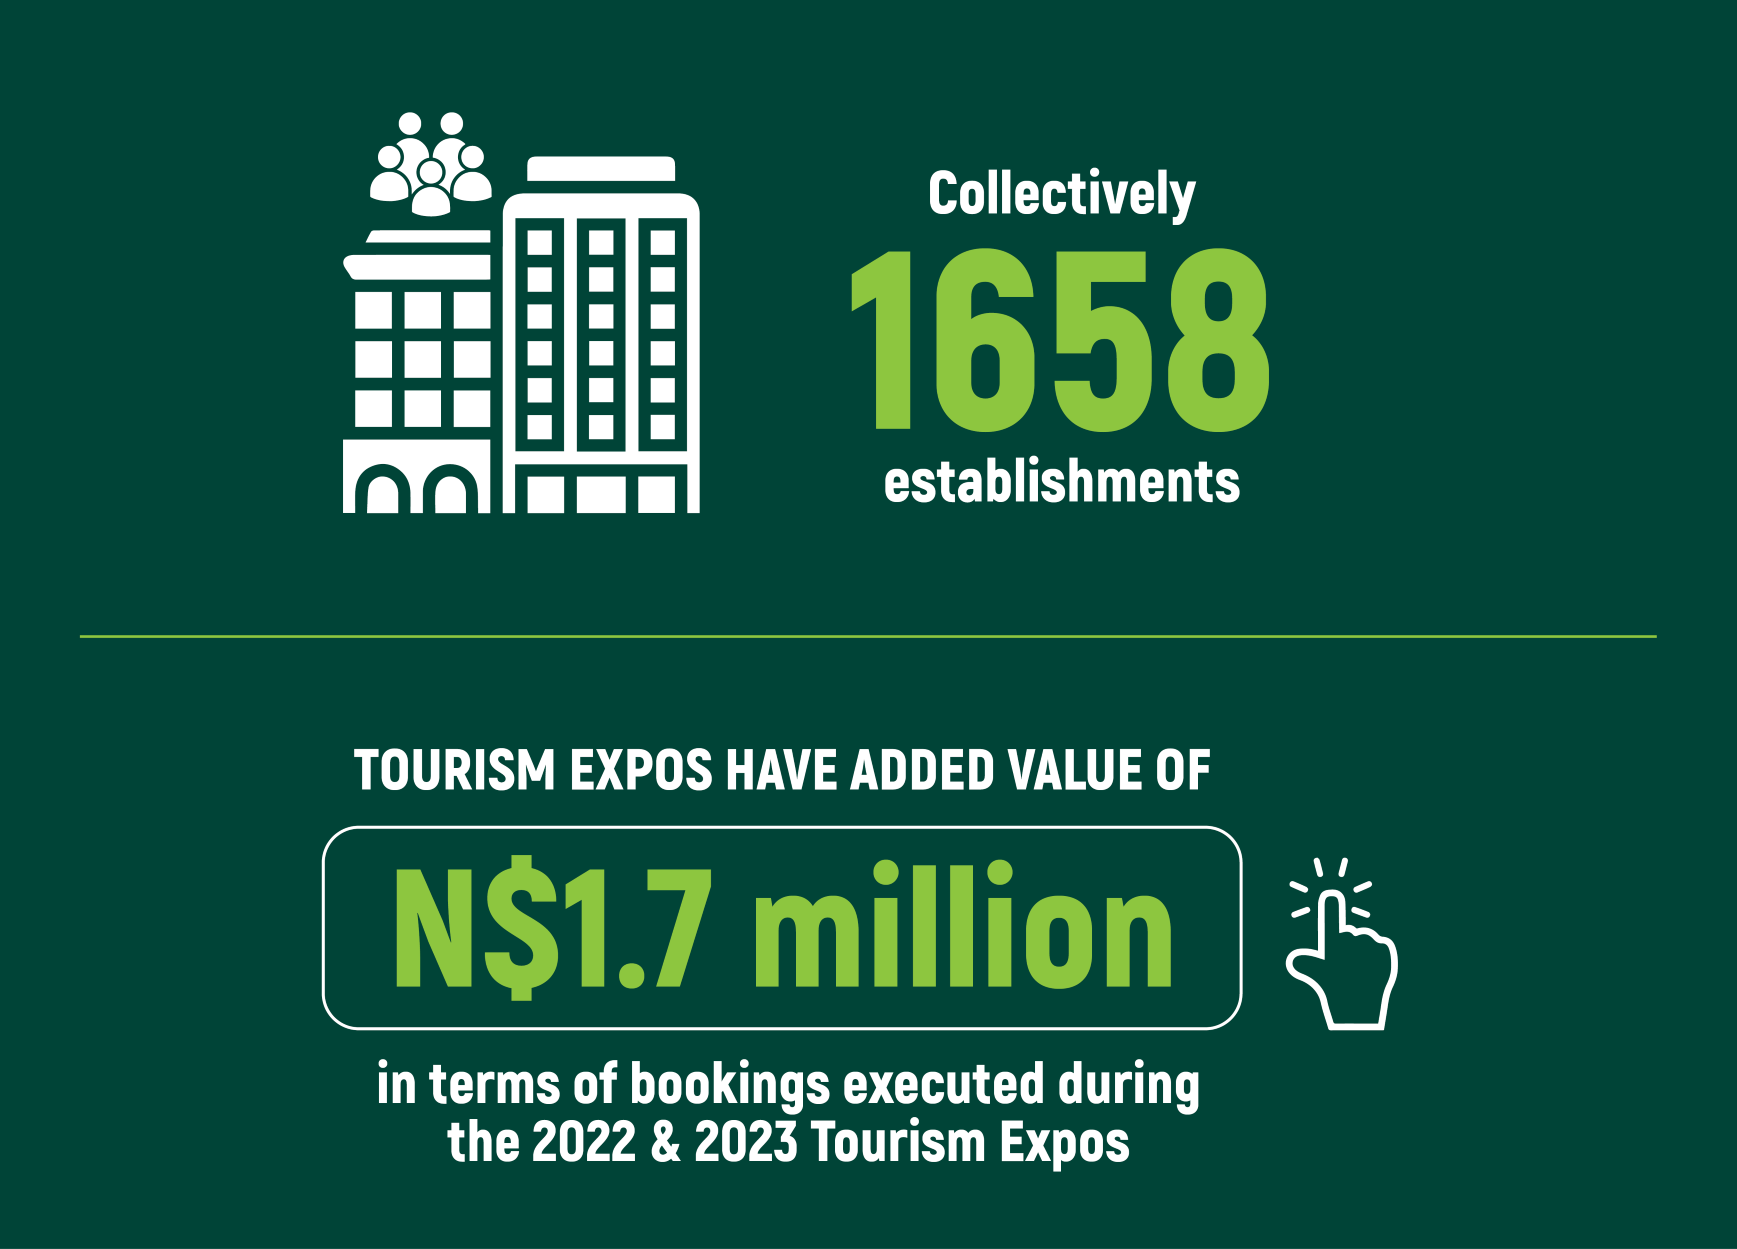 namibia tourism expo 2022